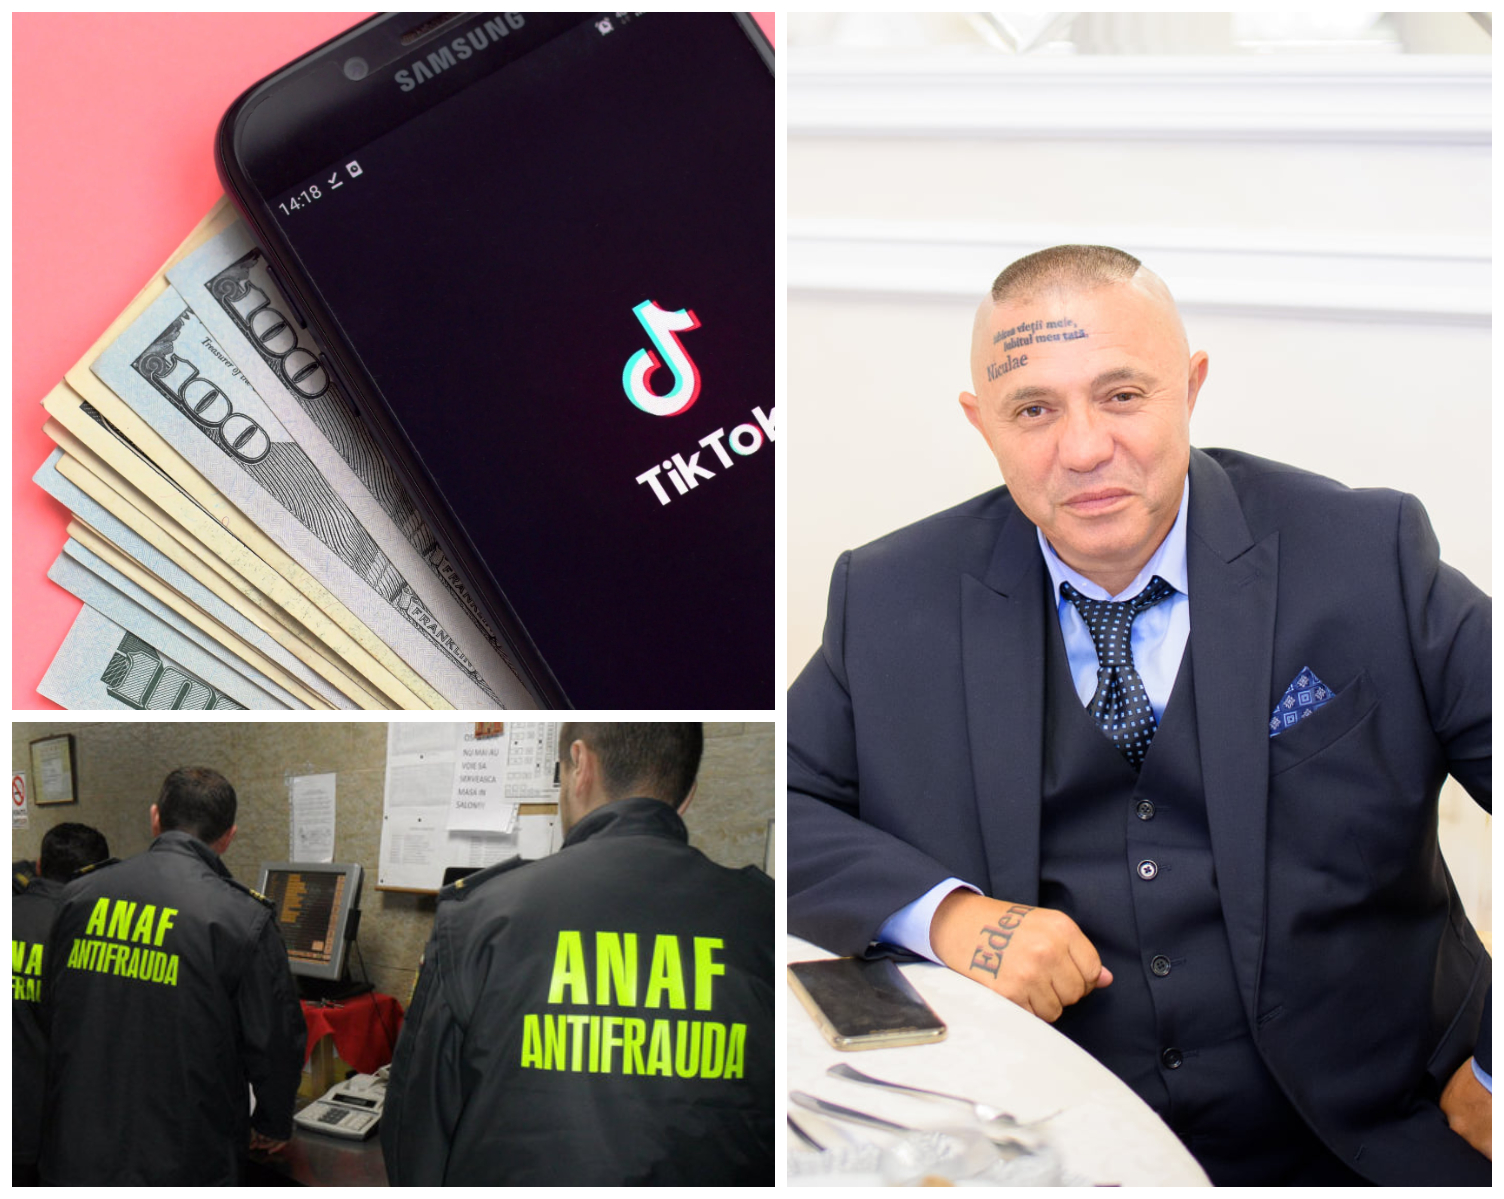 Control ANAF ”cu dedicație” pentru Nicolae Guță! Inspectorii au constatat că, în doar 4 ore de cântat pe TikTok, manelistul a primit donații suspecte, de 200.000 de euro